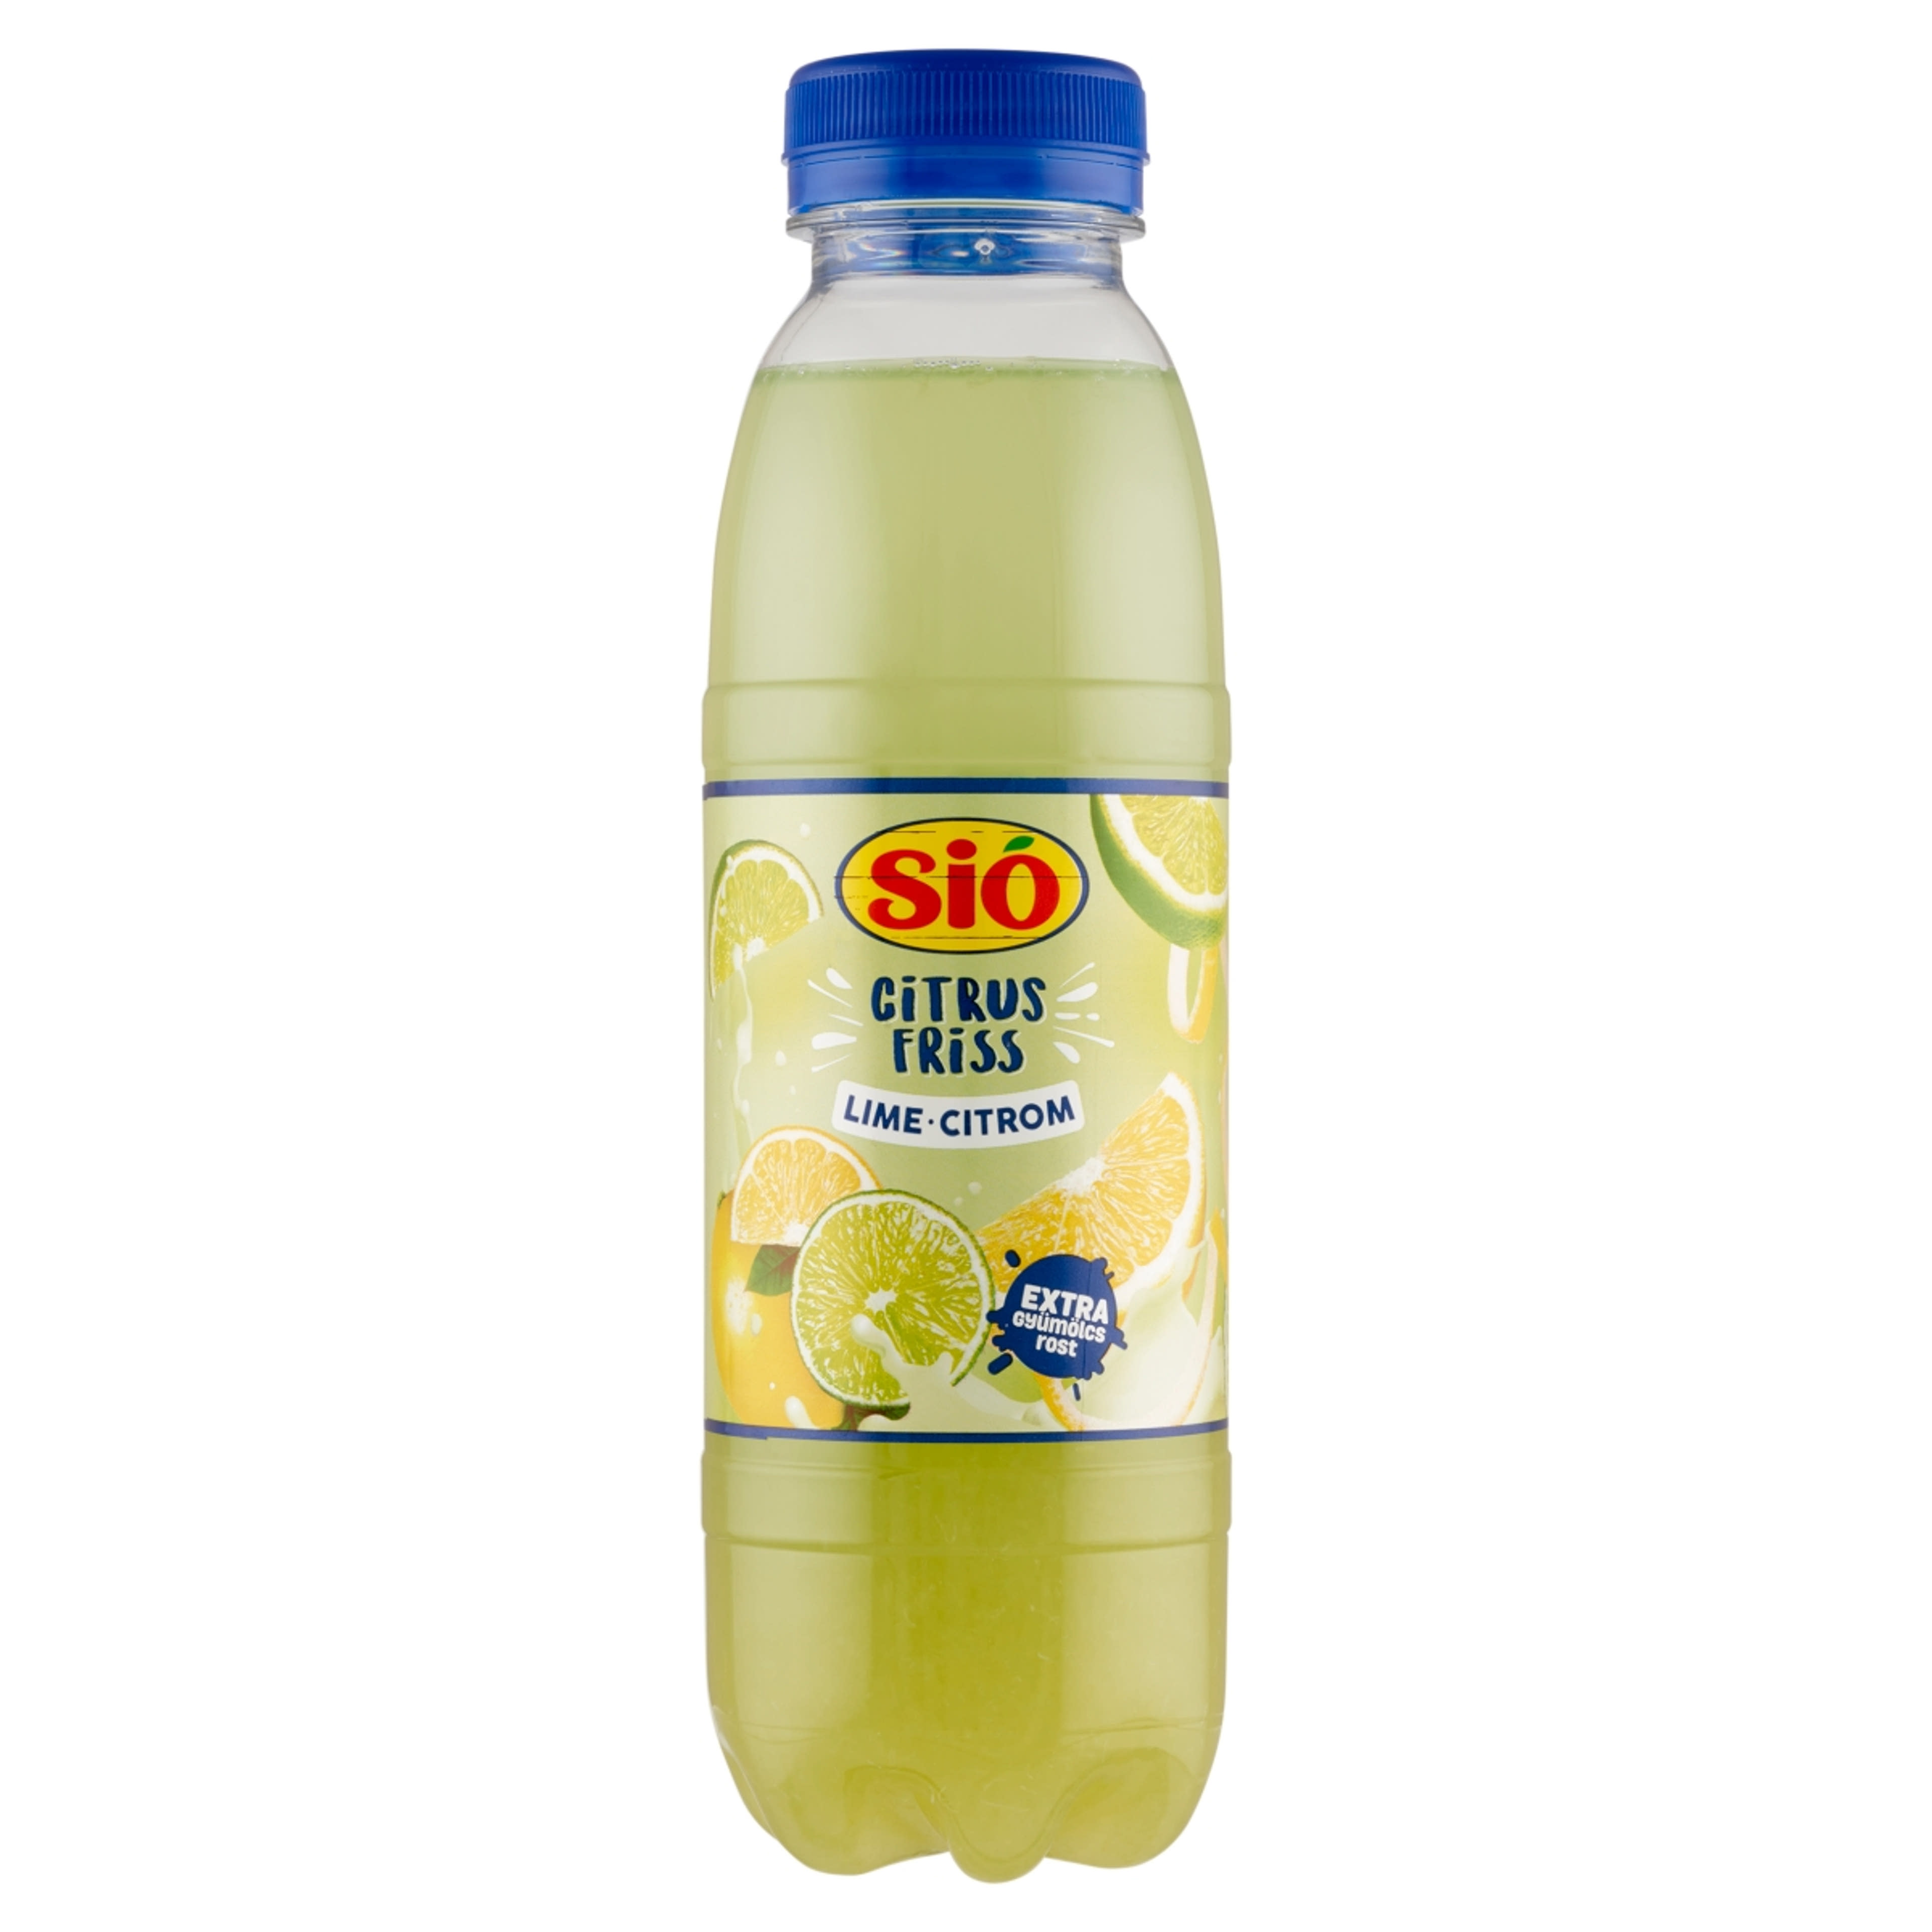 Sió Citrus Friss lime-citrom ital gyümölcshússal - 400 ml